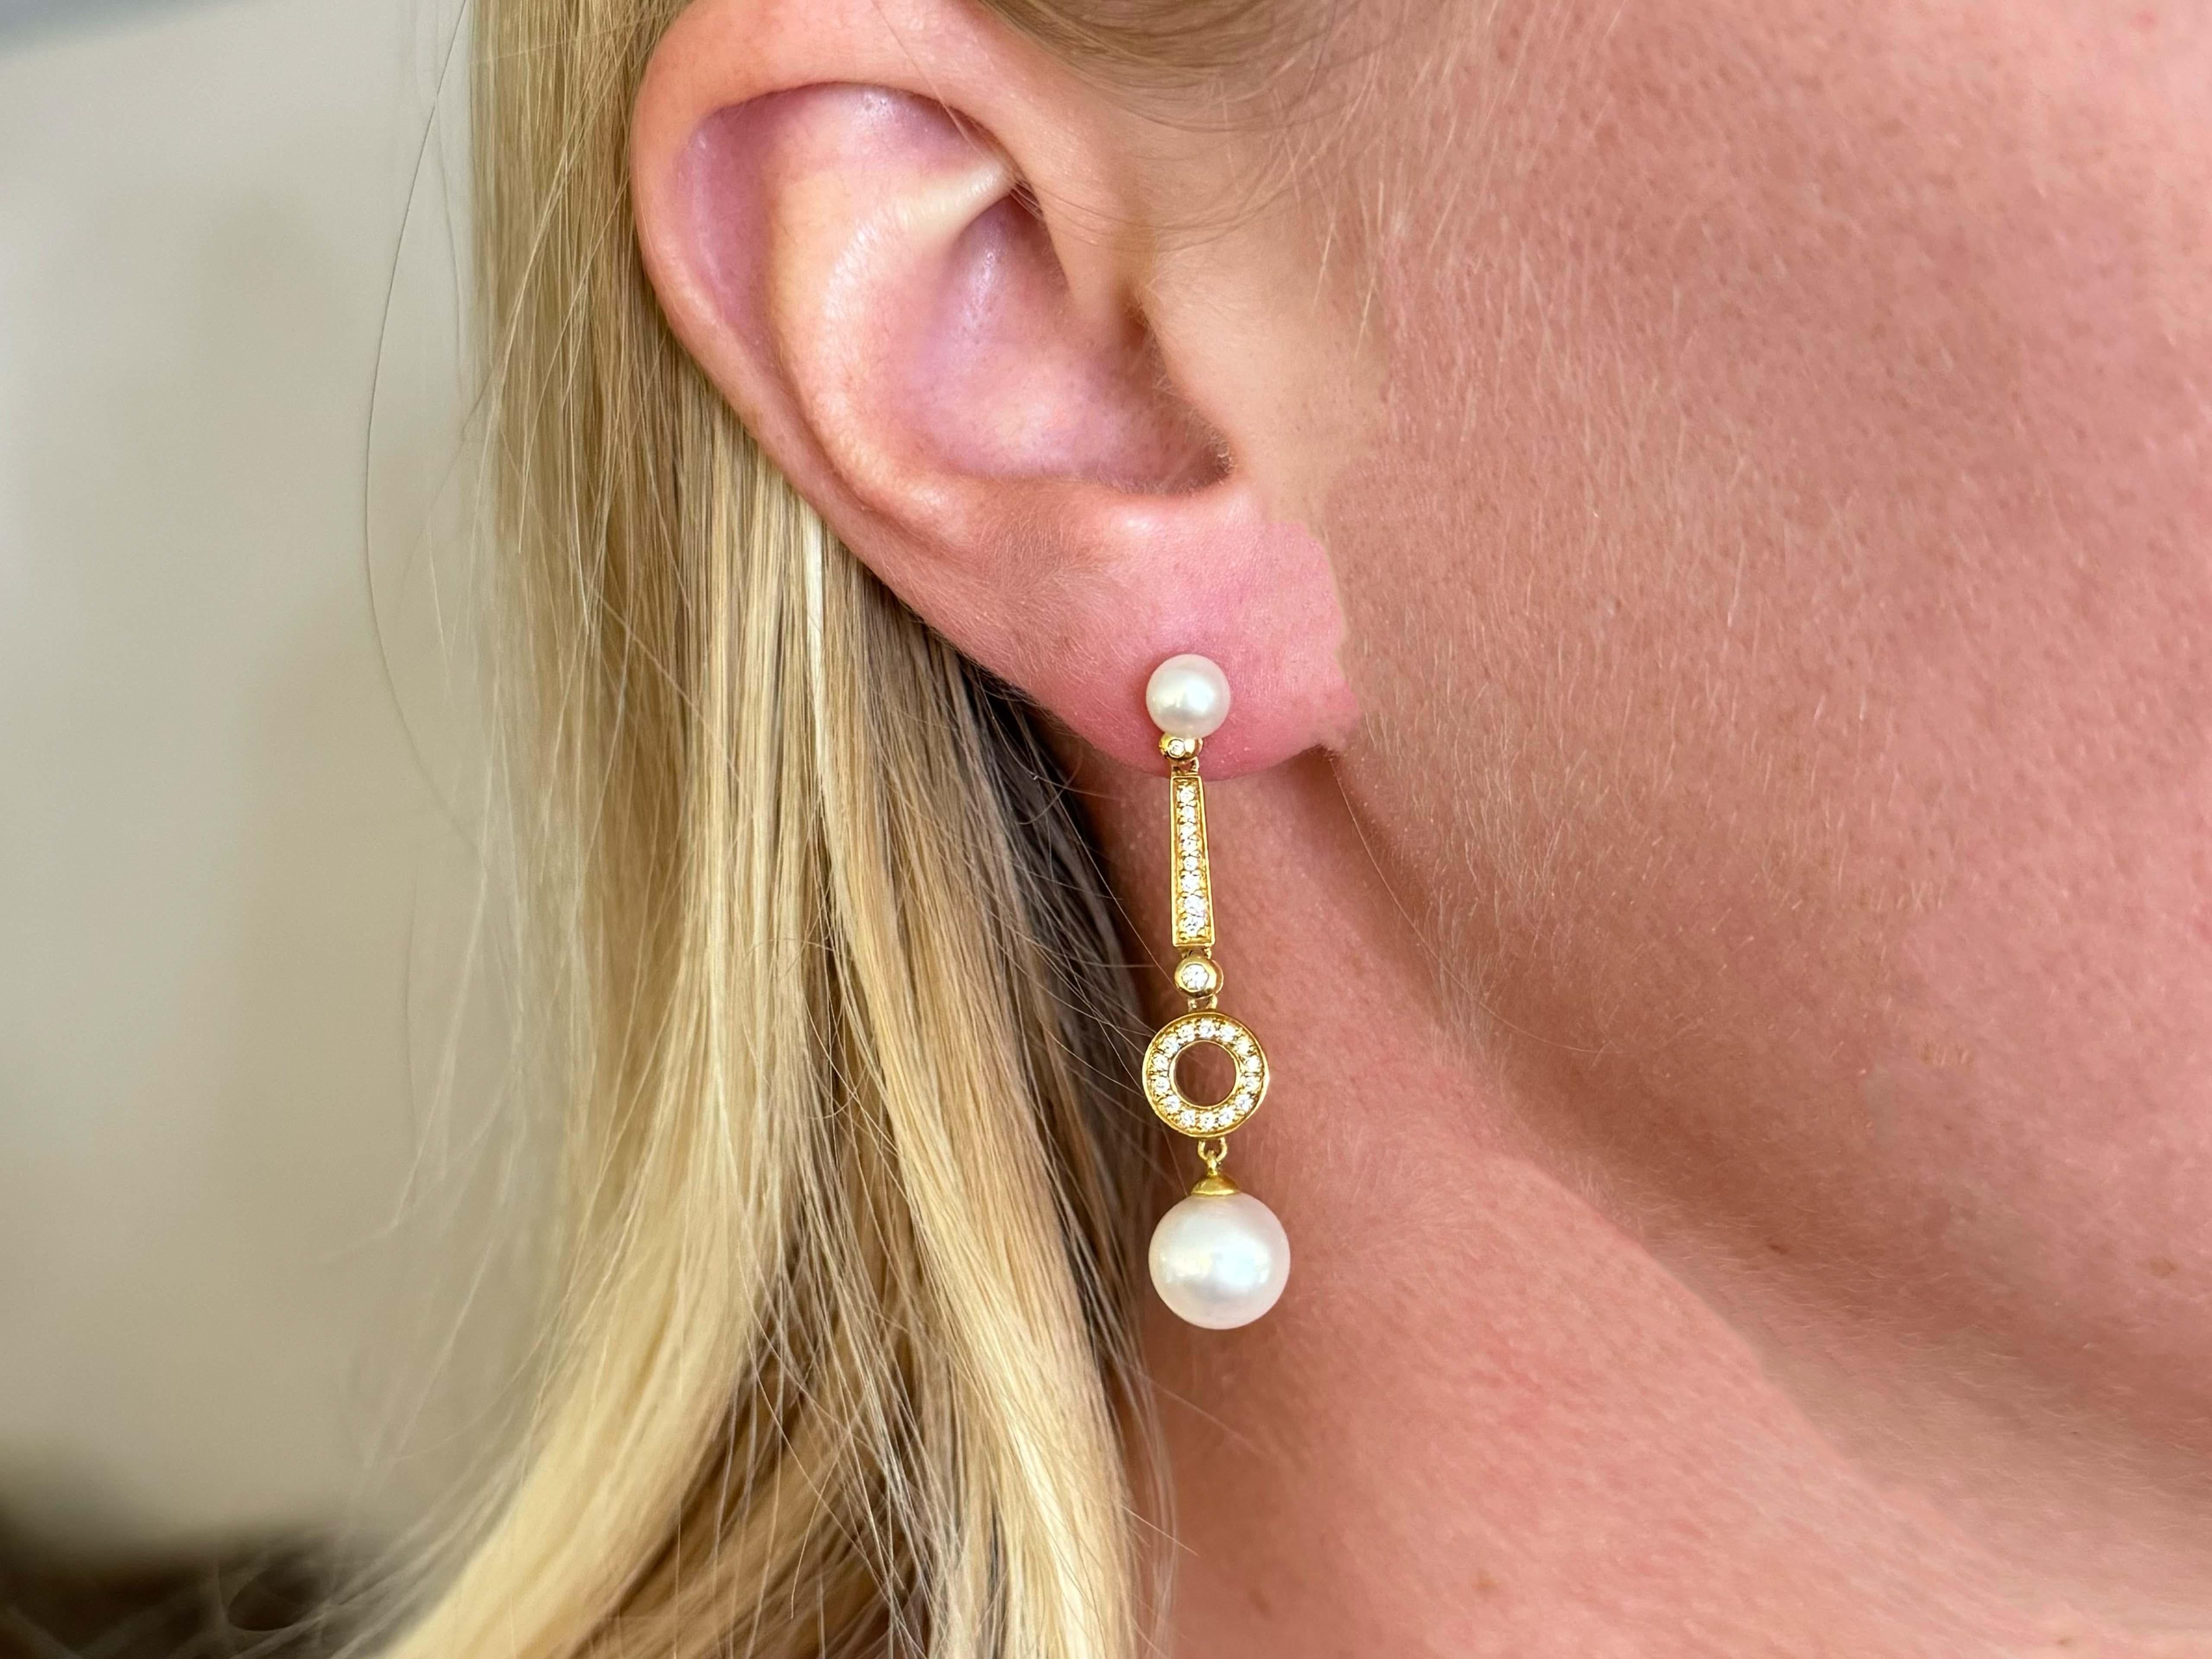 Earrings Specifications:

Metal: 18k Yellow Gold

Earring Length: 1.7